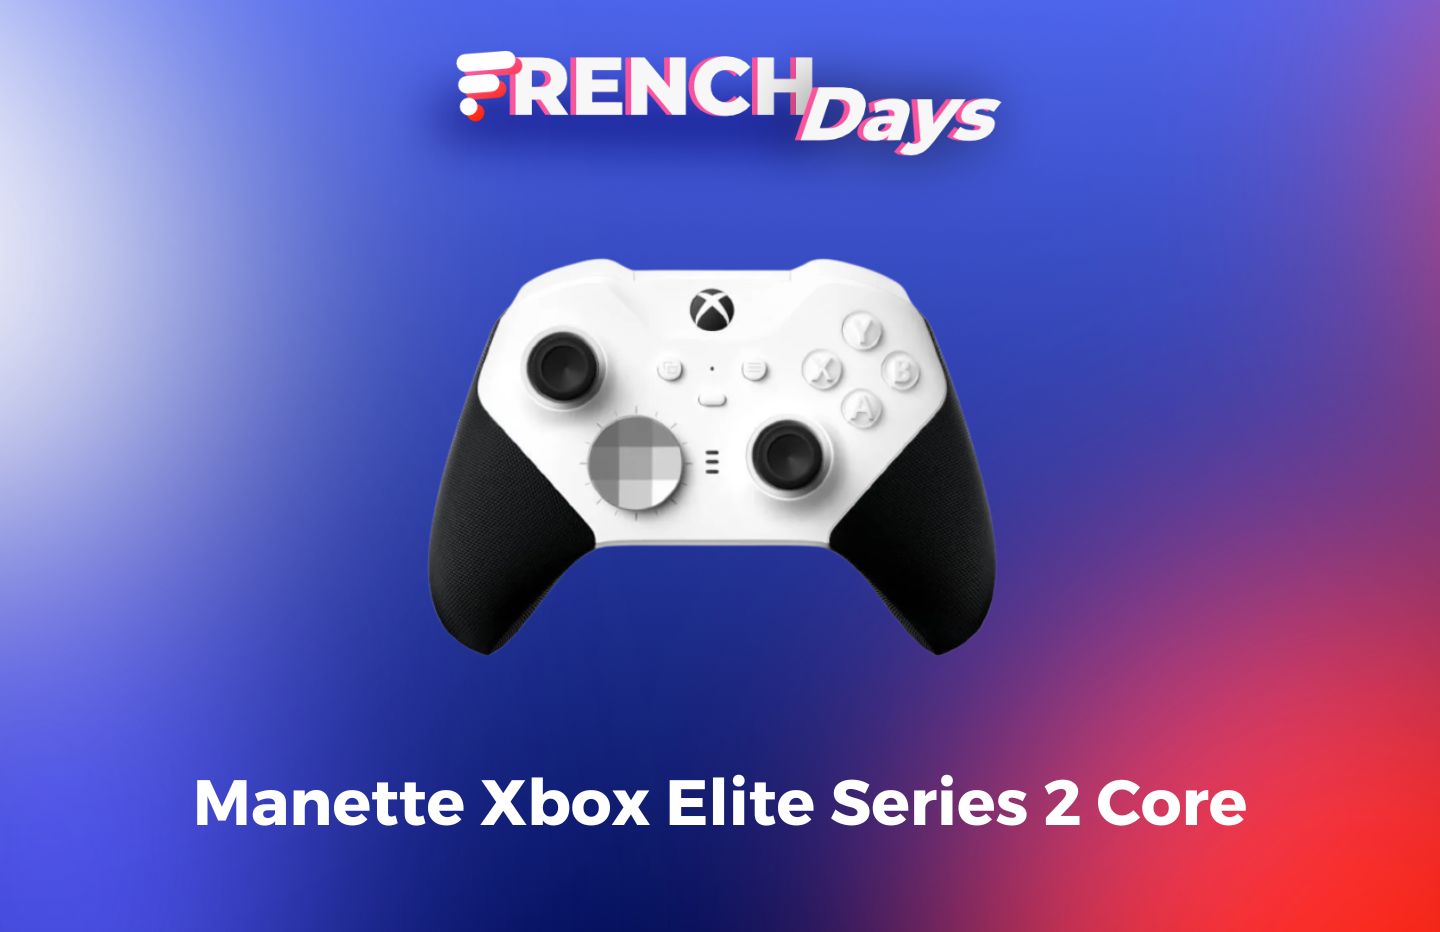 À moins de 40 euros pour les French Days, cet accessoire Xbox Series est  déjà en